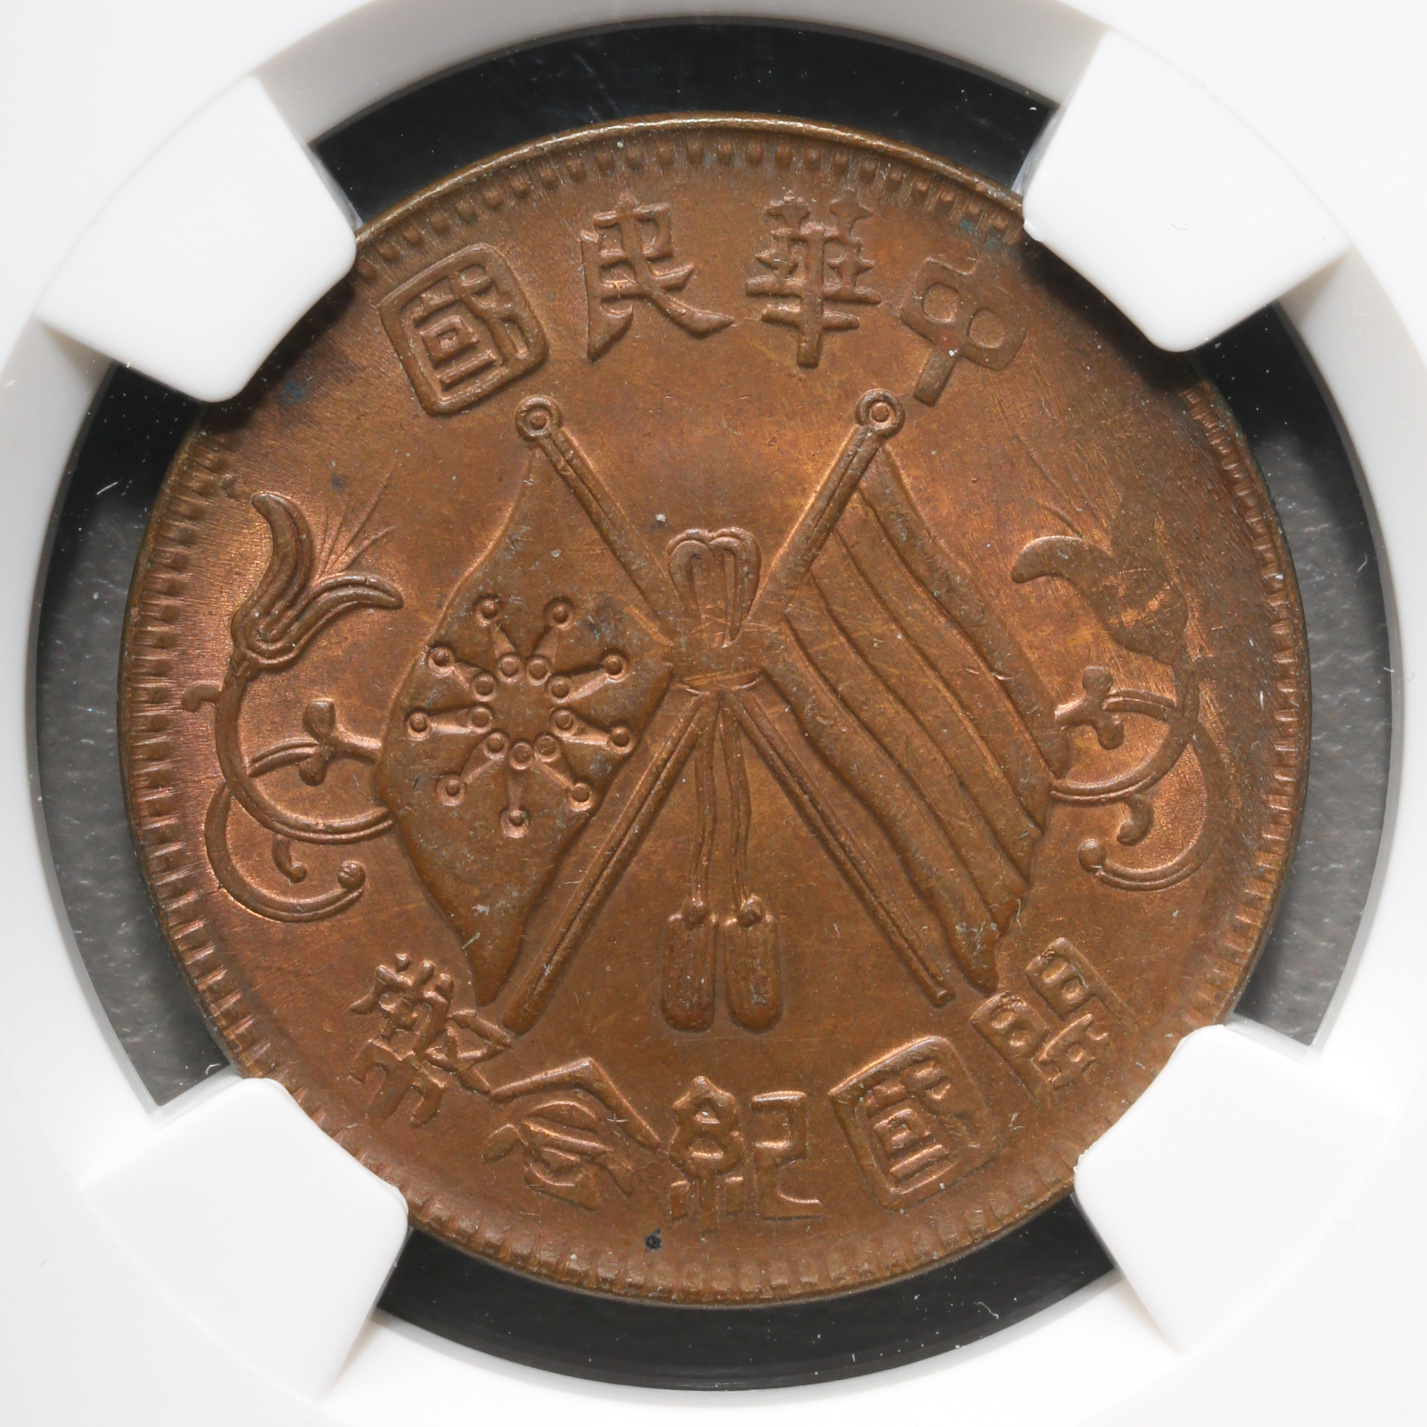 貨幣博物館 | 中華民国中央政府 Republic of China 中華民国開国記念幣